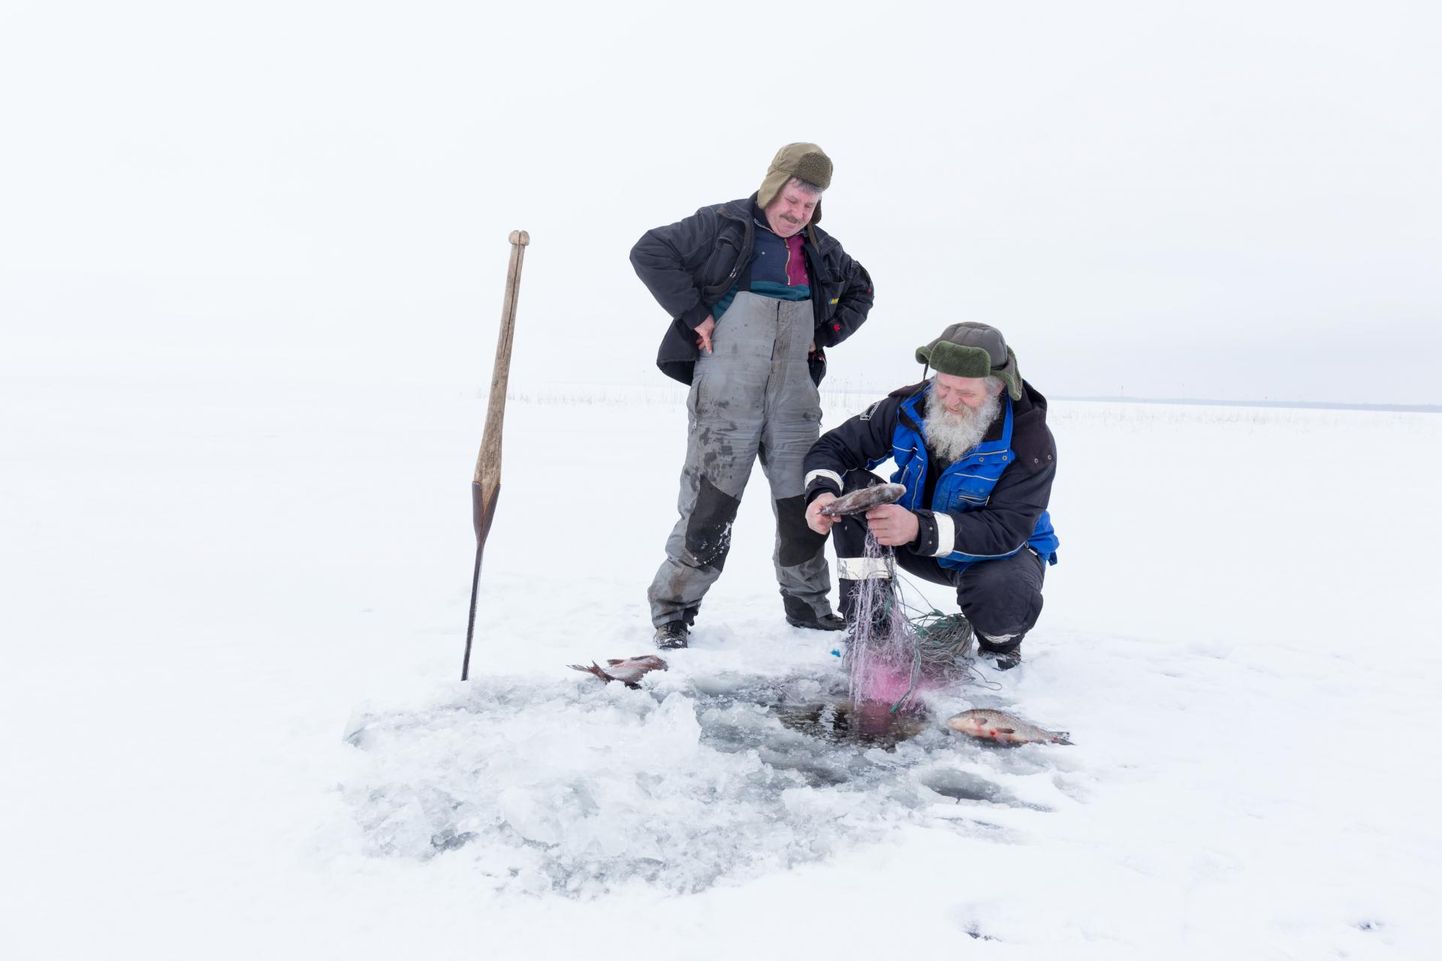 Võrtsjärve kalurid Ants Leiaru (habemega) ja Marko Vaher pidid võrgupüügist 15. märtsist suu puhtaks pühkima, ehkki nüüd algaks kõige magusam kohapüügiaeg.